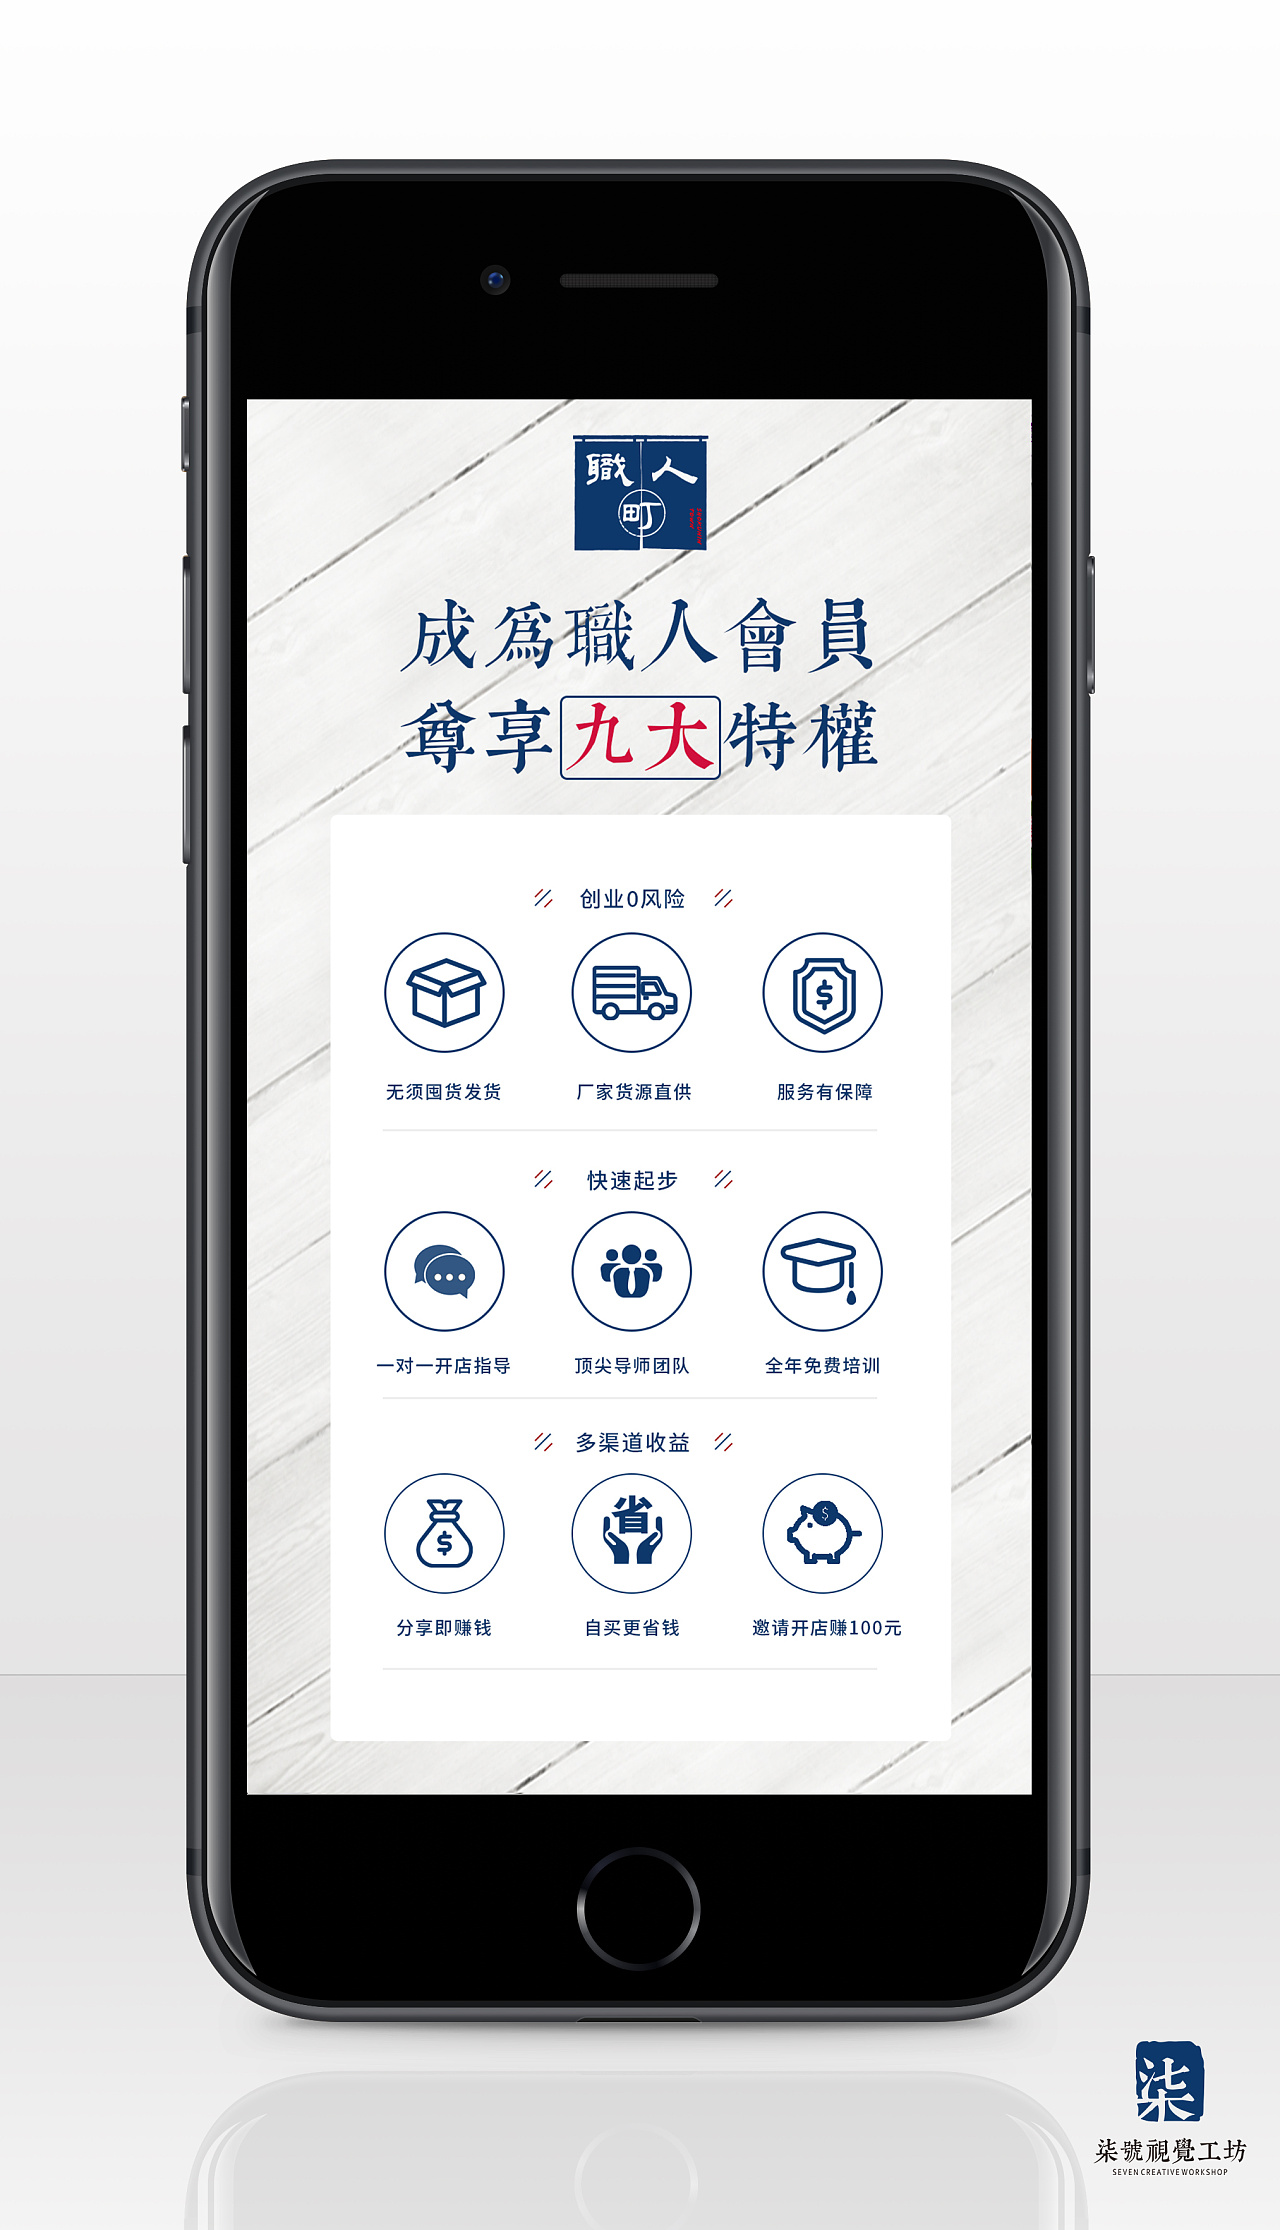 社交电商平台推广宣传手机朋友圈海报